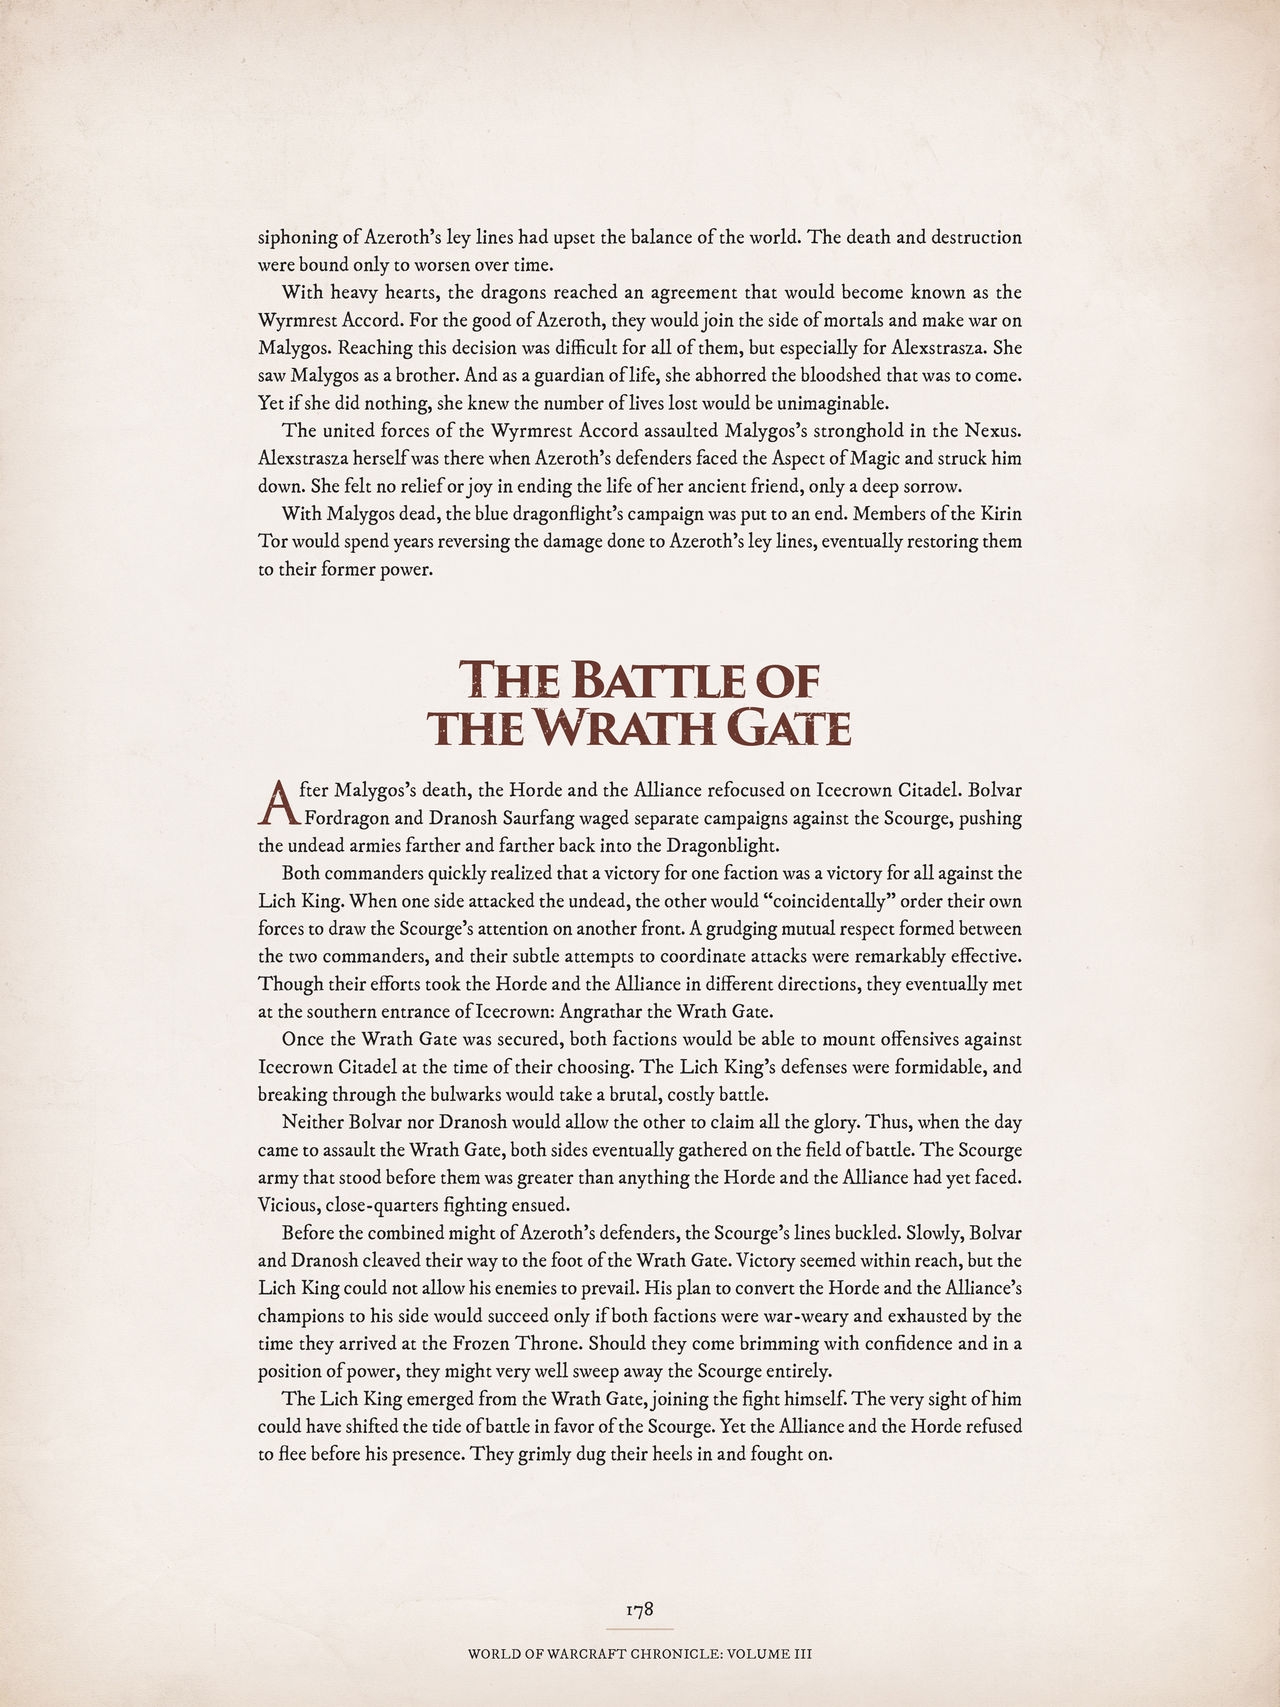 World of Warcraft Chronicle Volume III 169